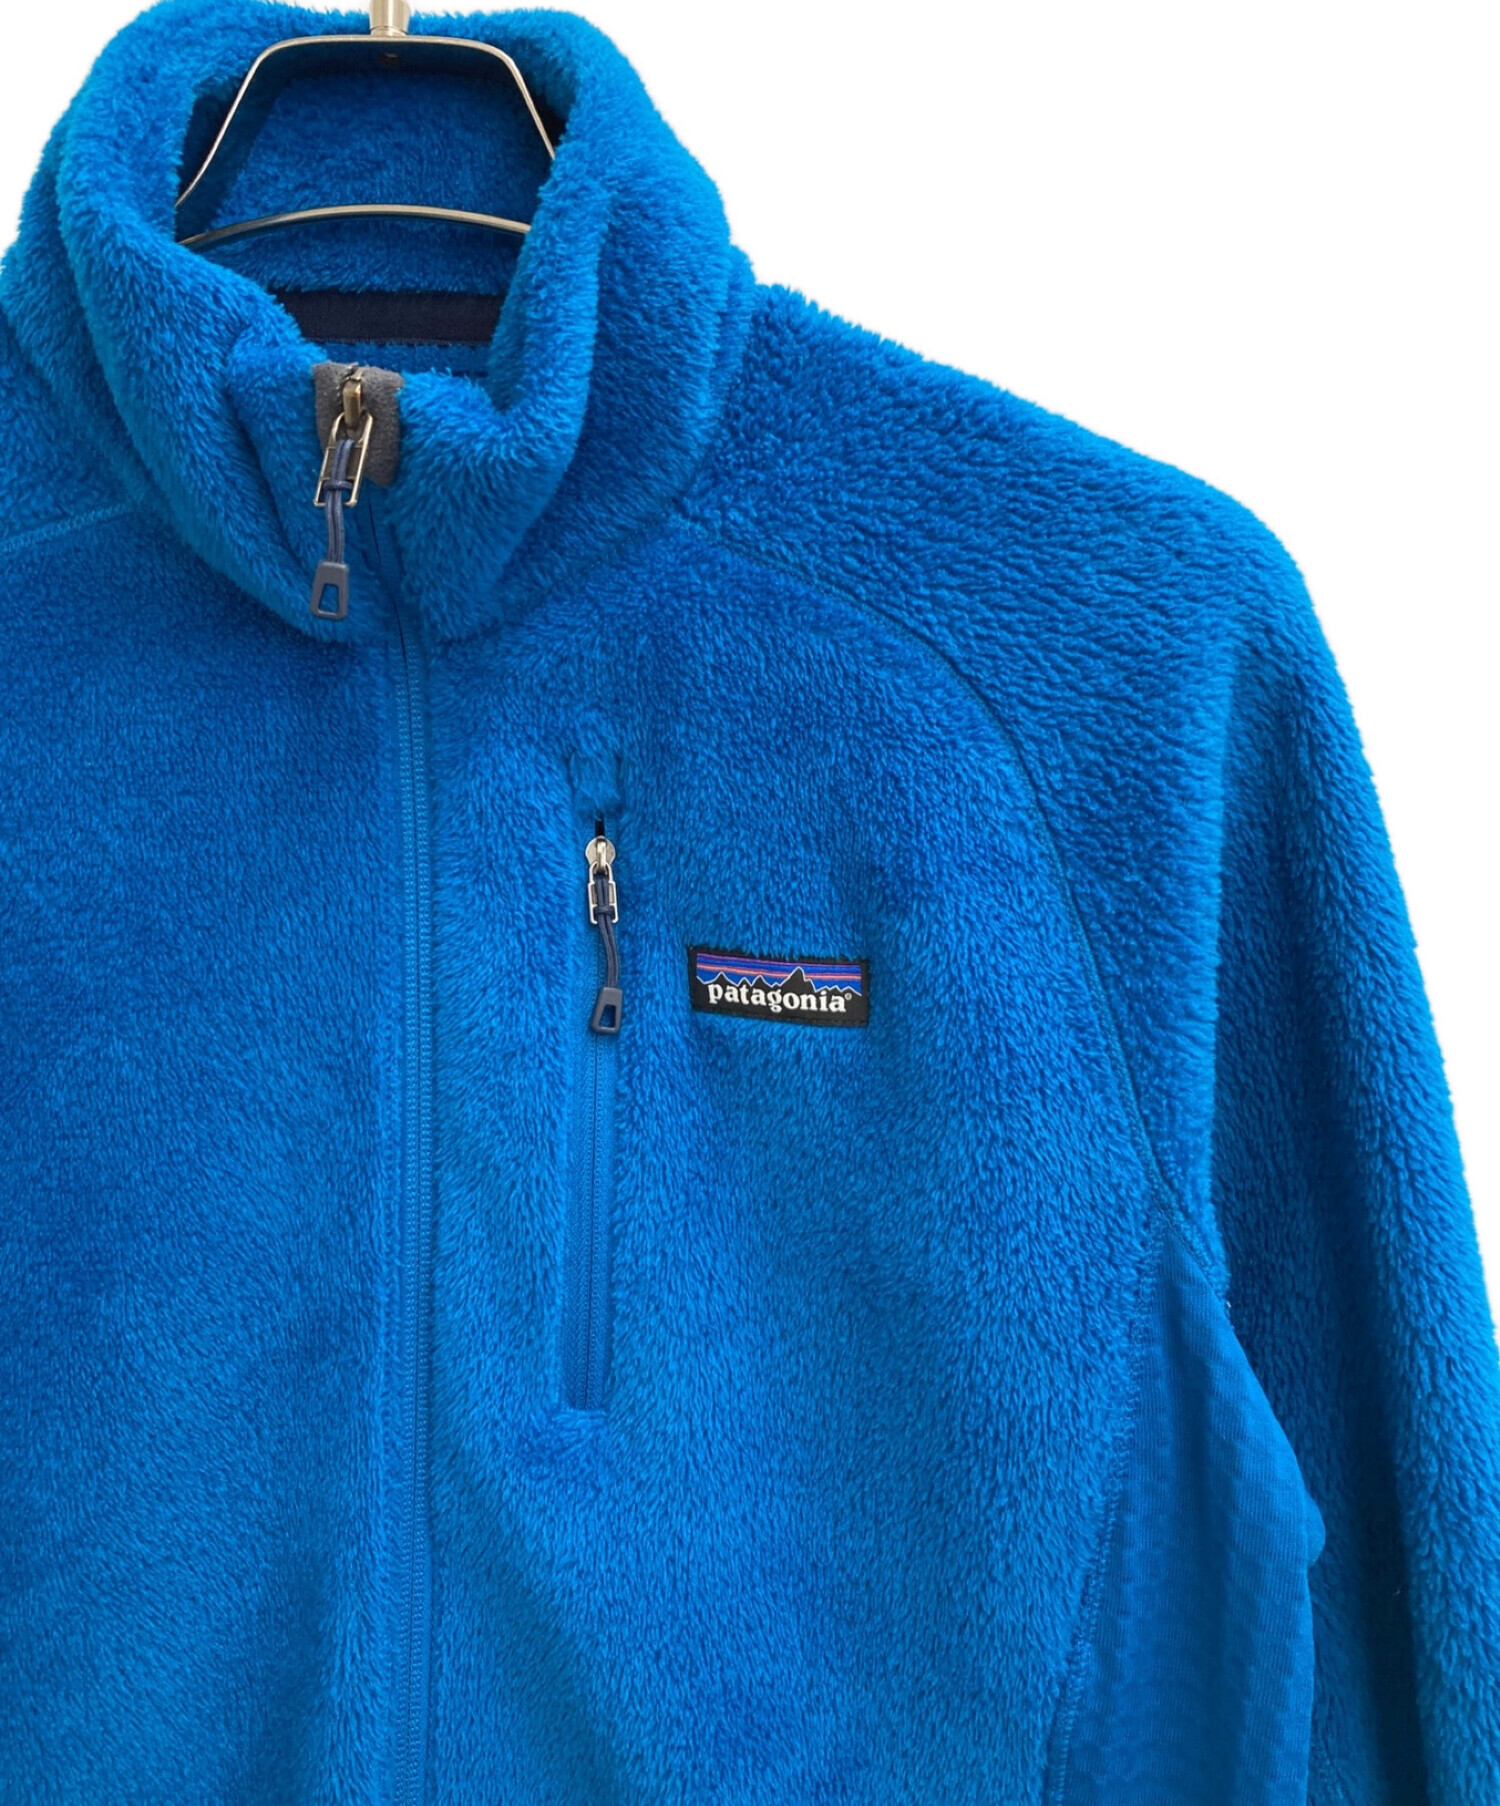 Patagonia (パタゴニア) R2ジャケット ブルー サイズ:M